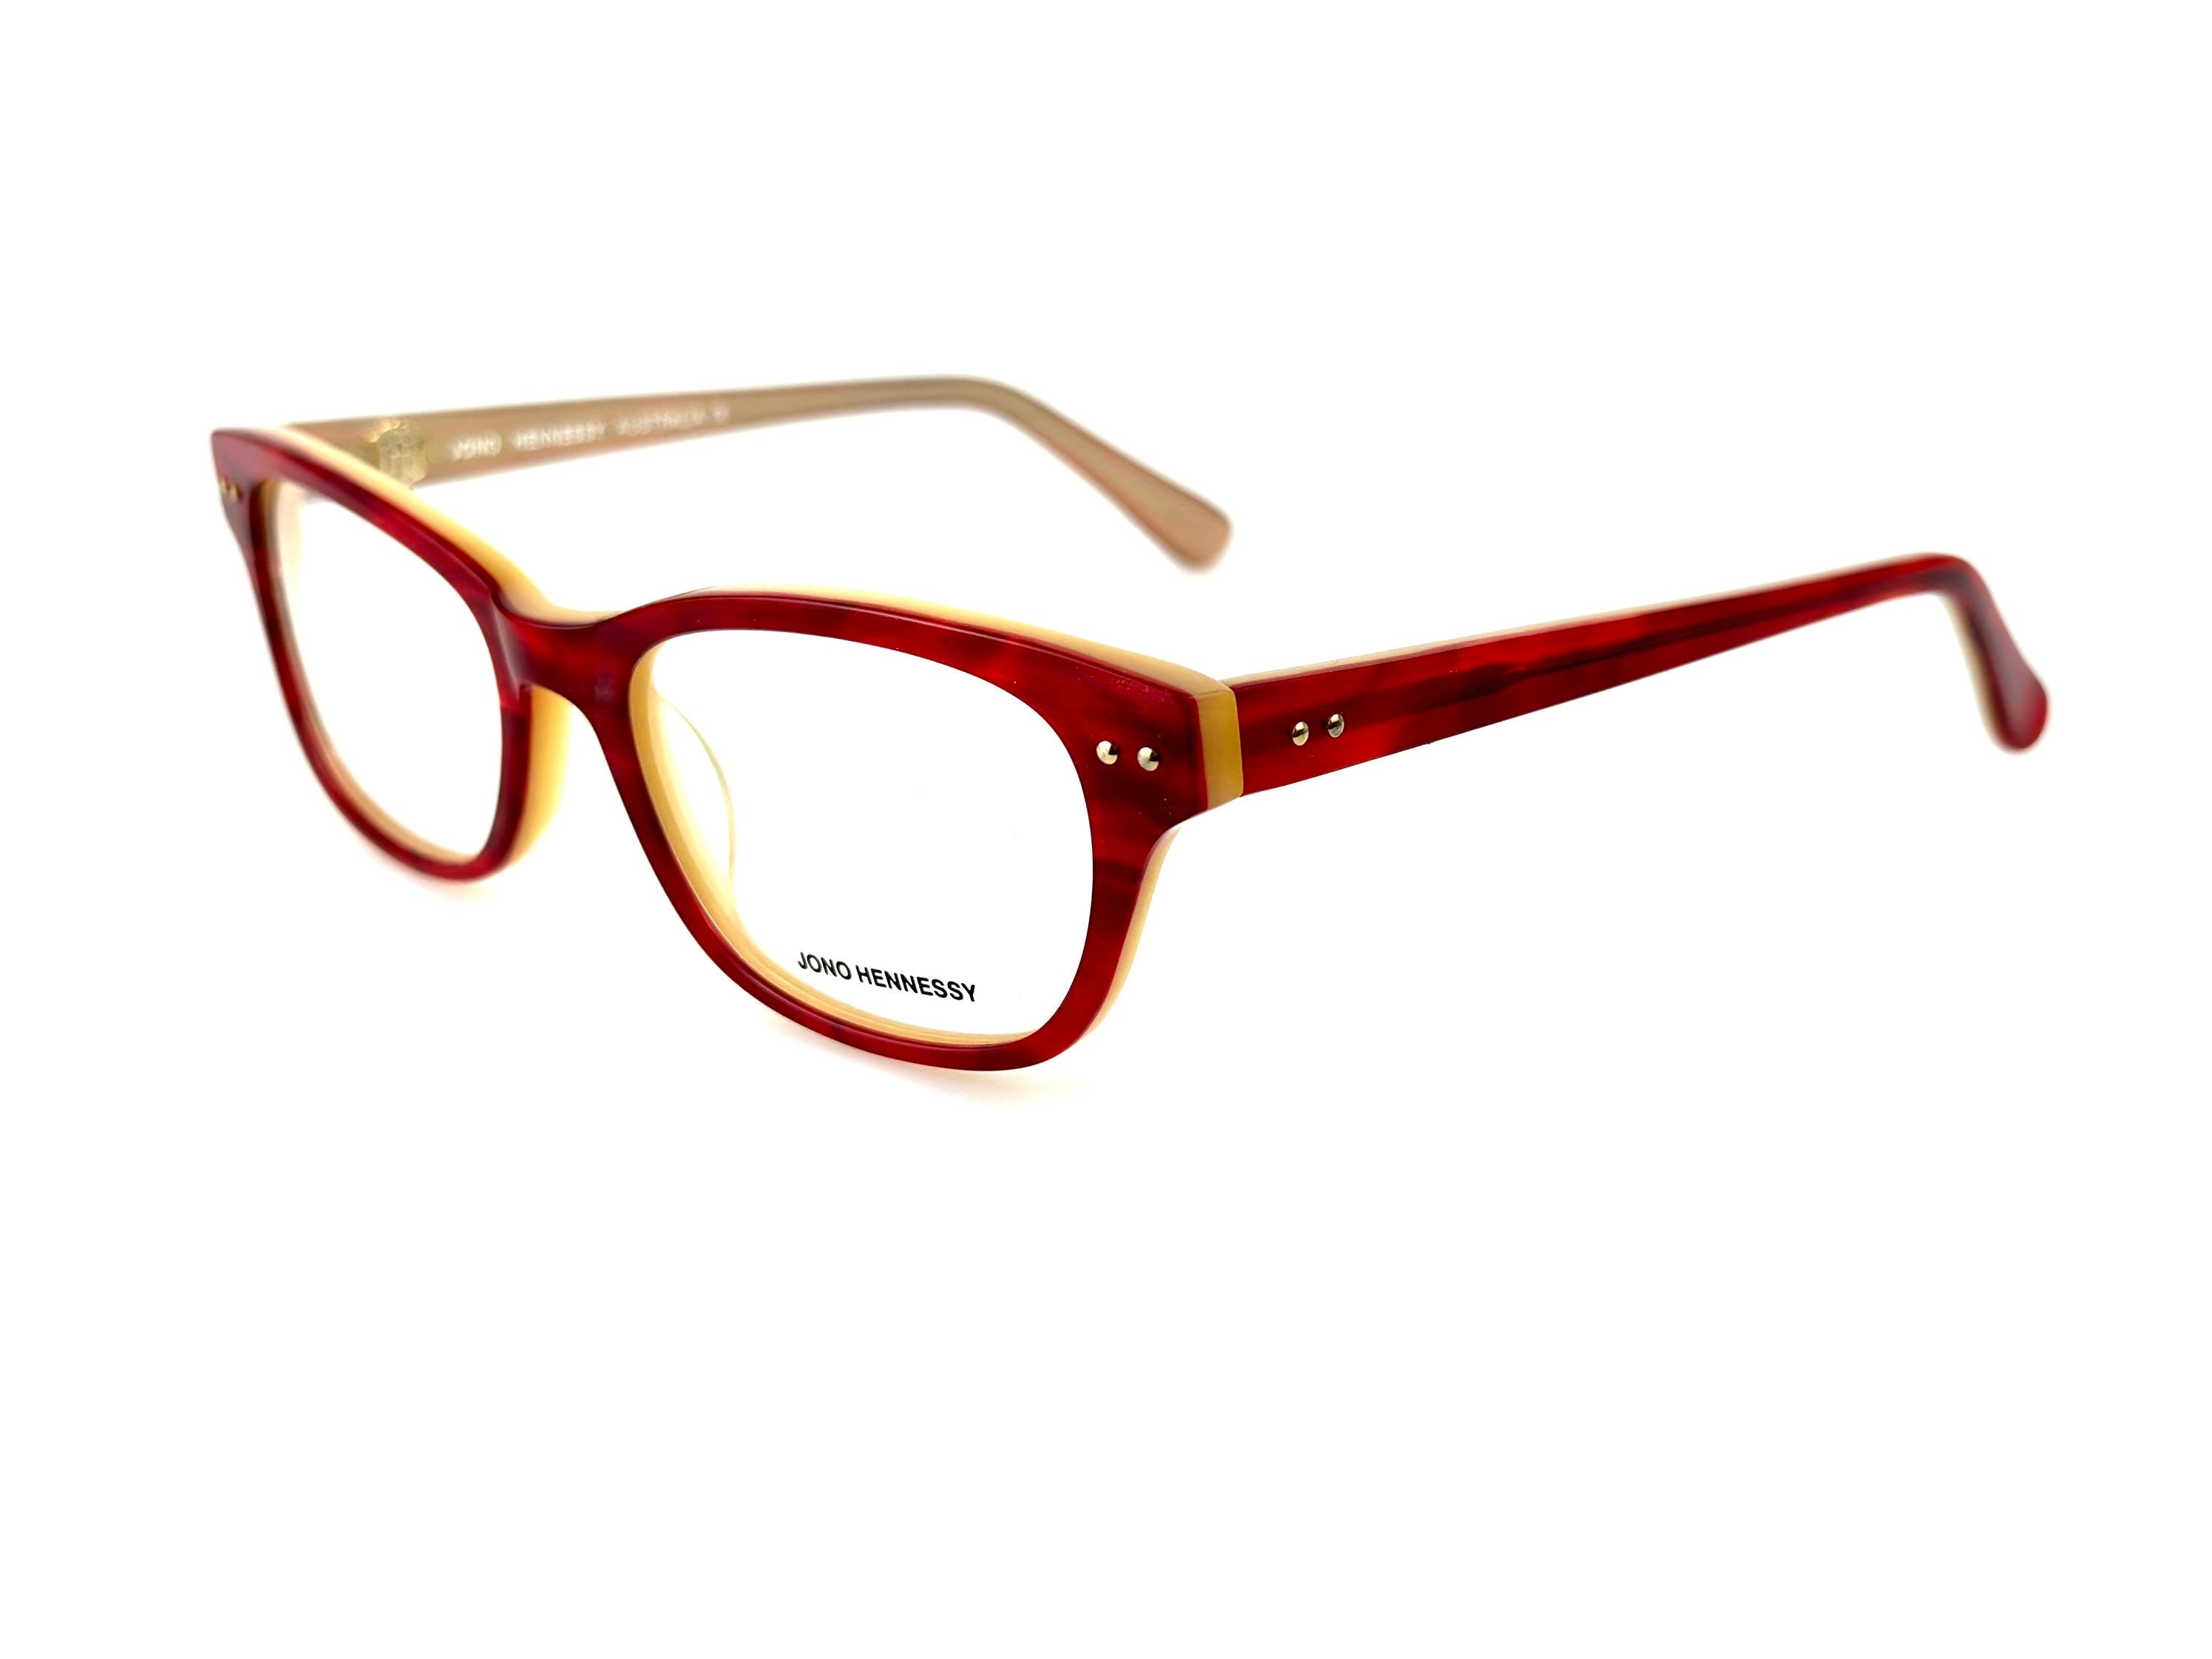 Jono Hennessy Eyeglasses, Eye Glasses for Women, Full Frame Eyeglass ...